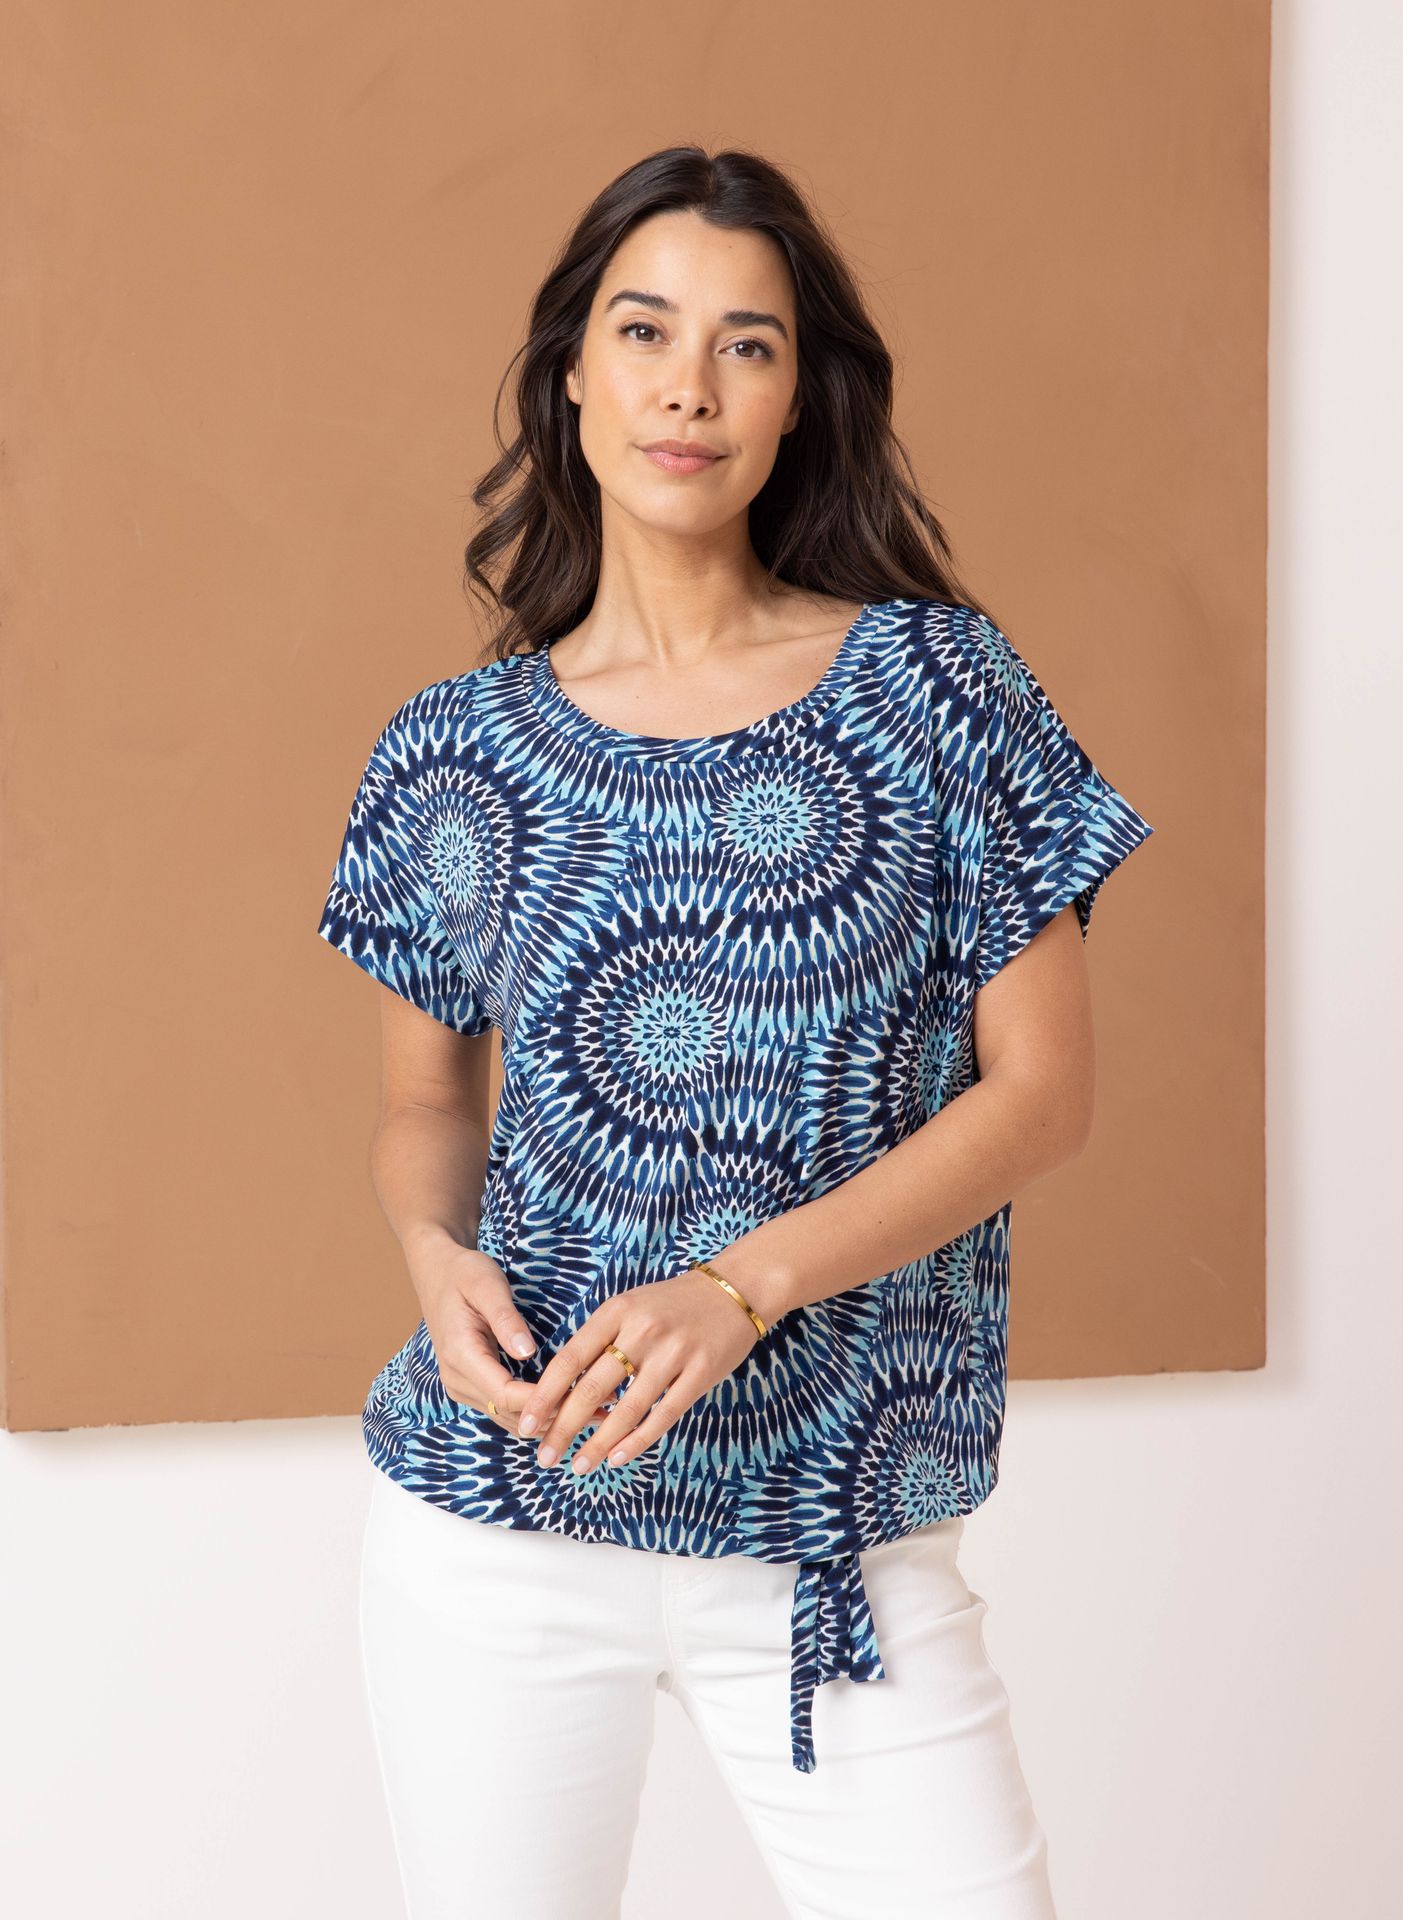 Norah Meerkleurig shirt co-ord blue multicolor 213820-420